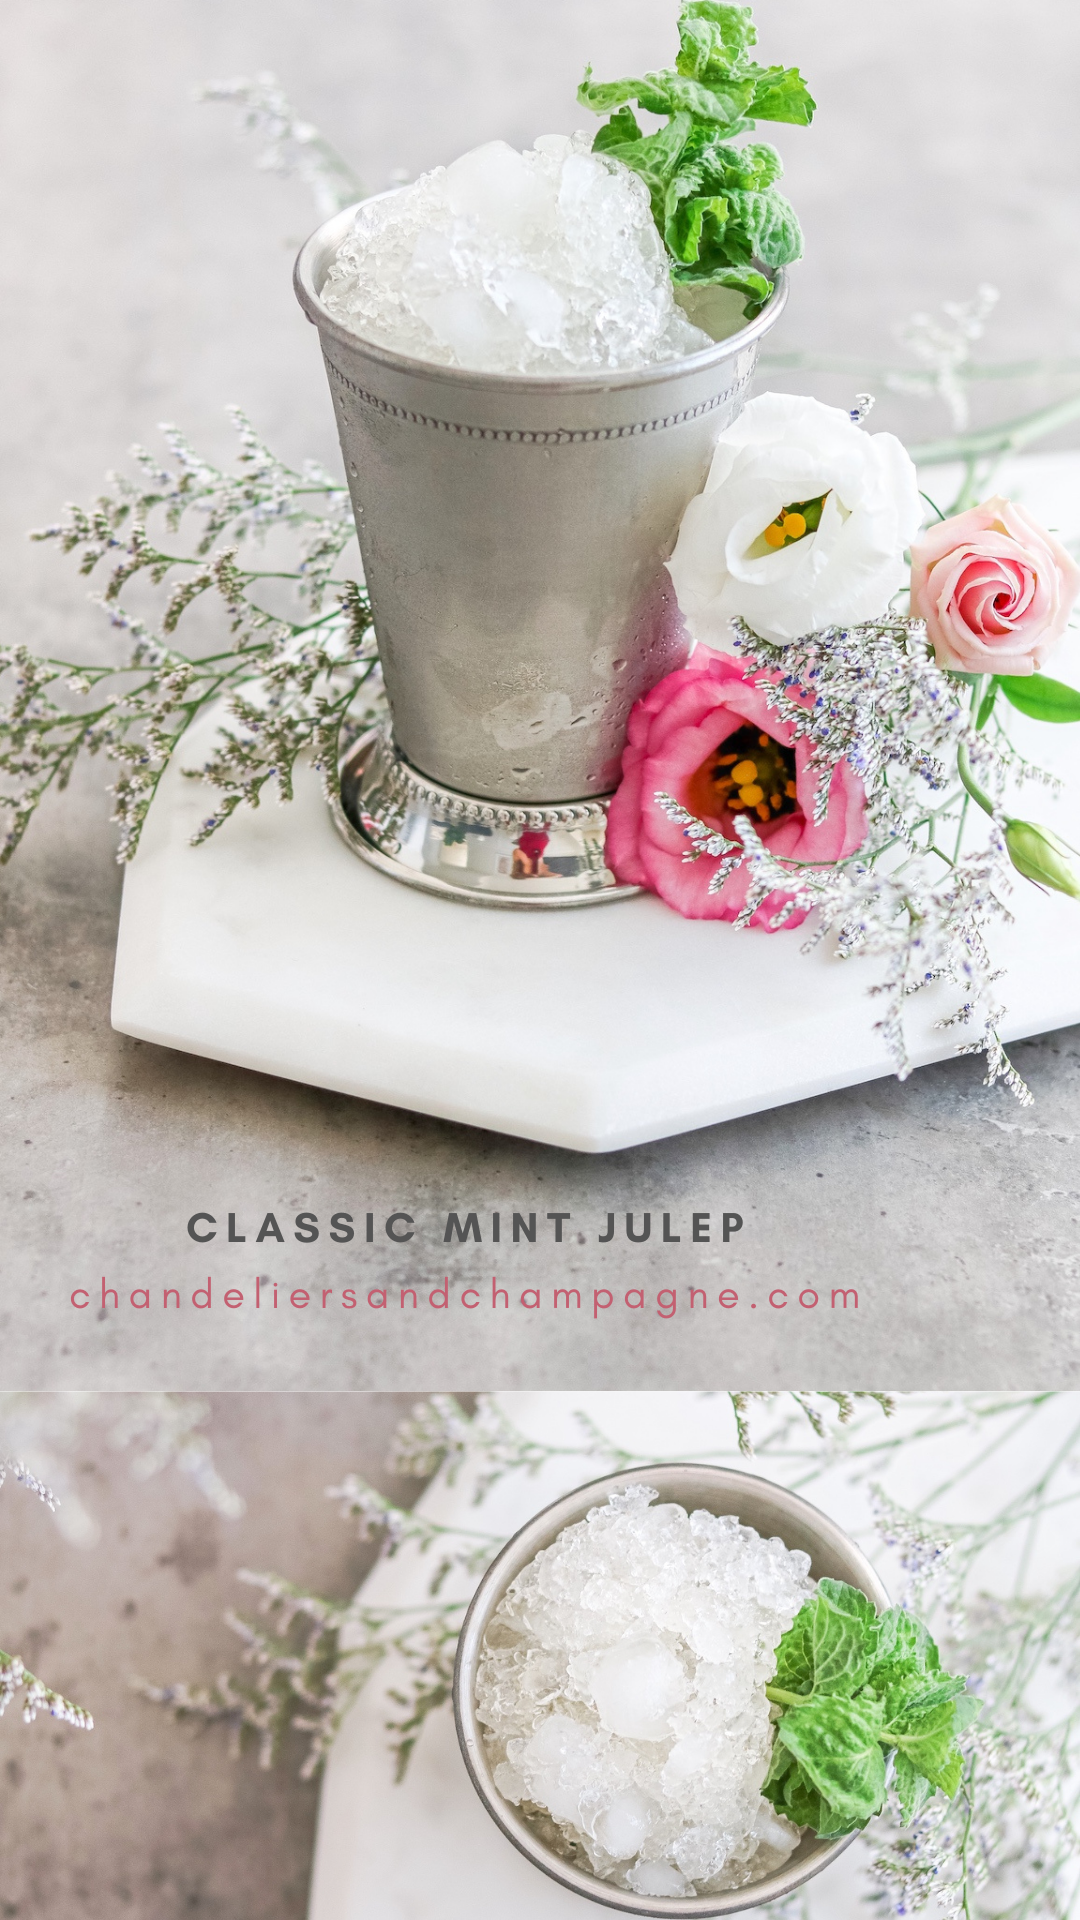 Classic Mint Julep recipe